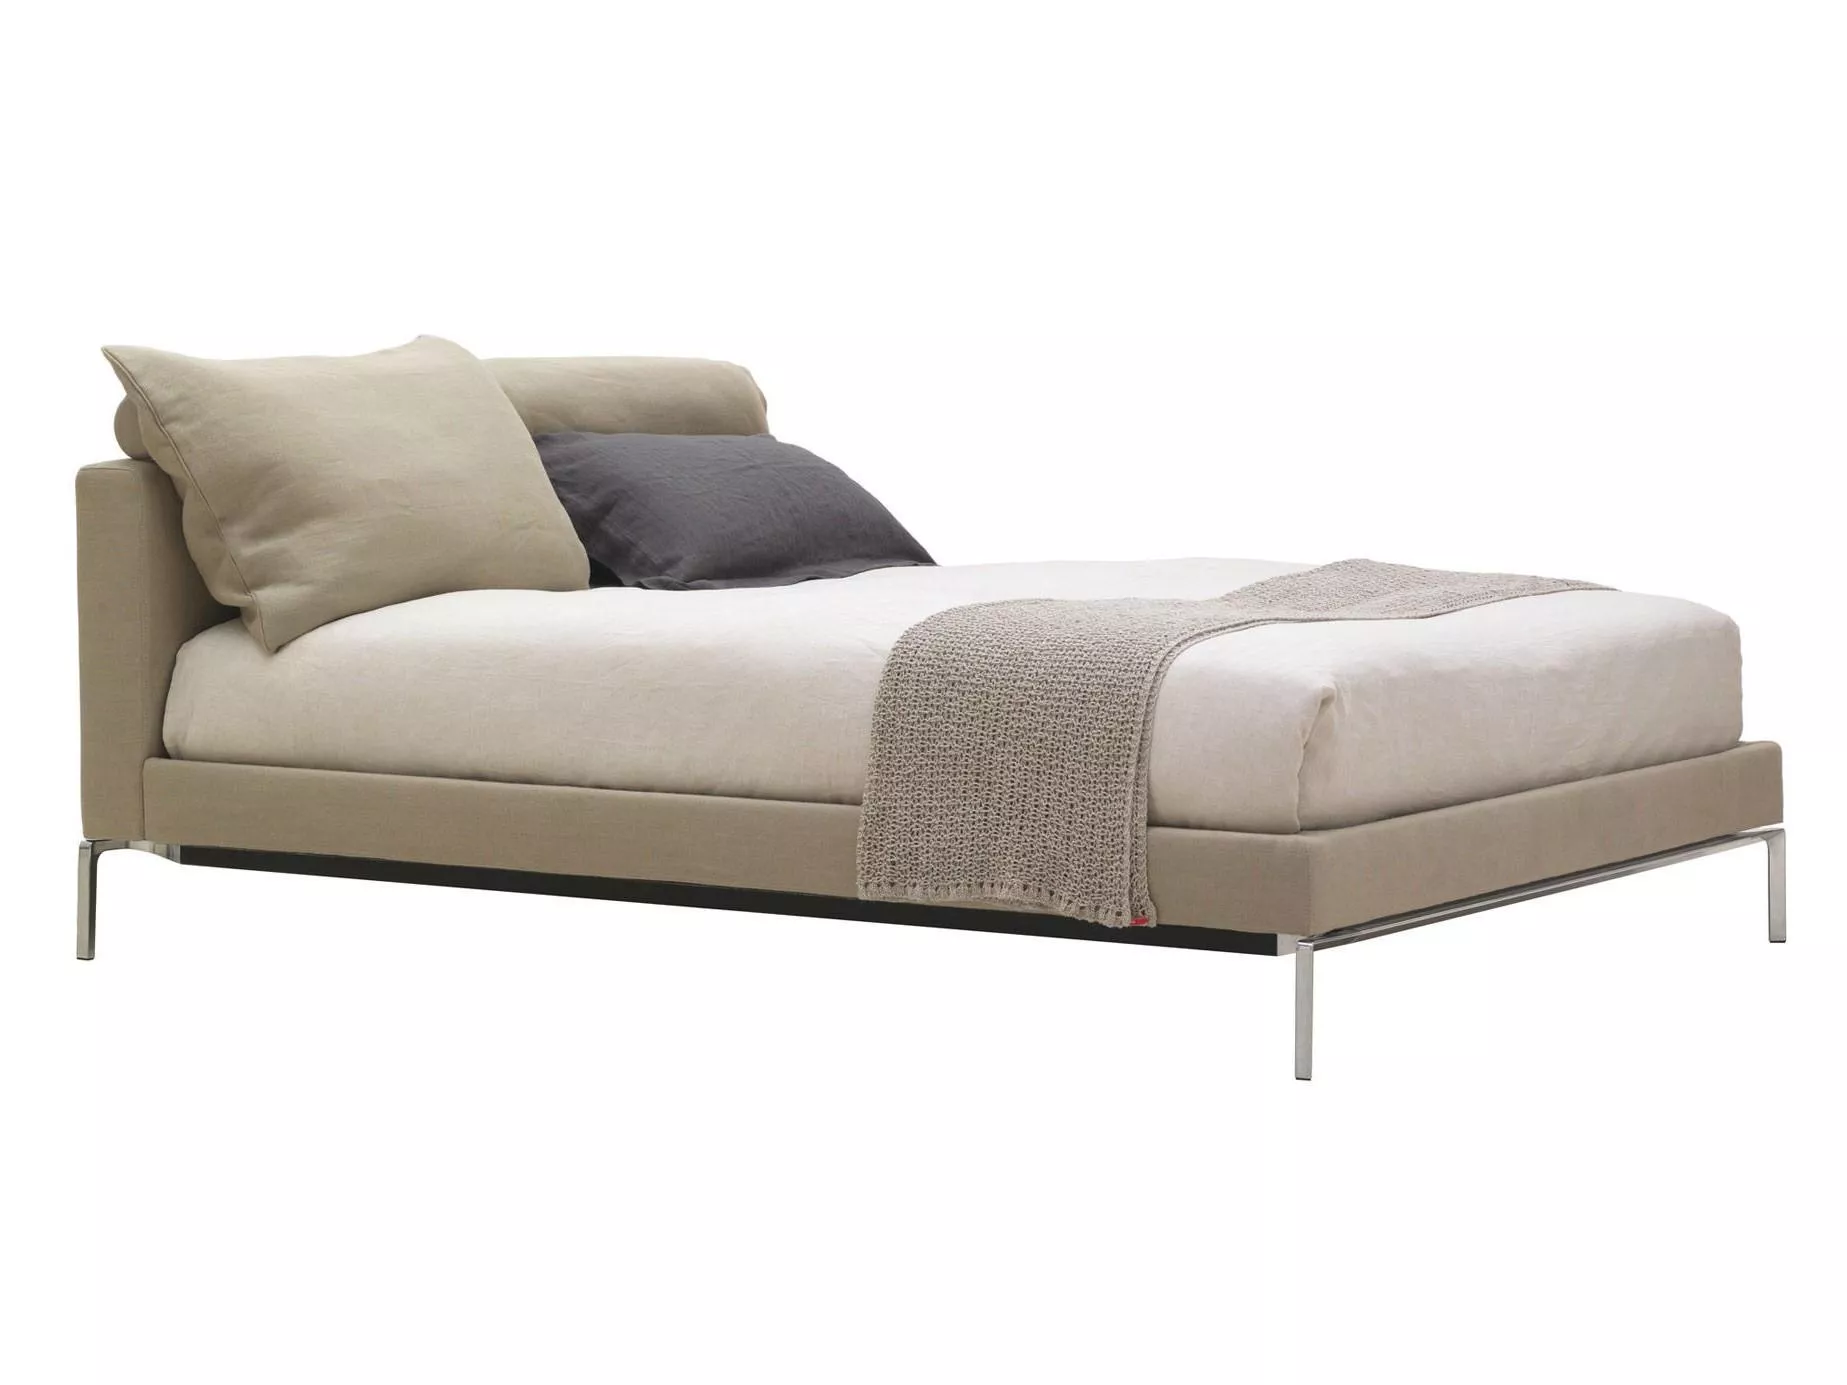 Кровать Moov Cassina L32 — купить по цене фабрики